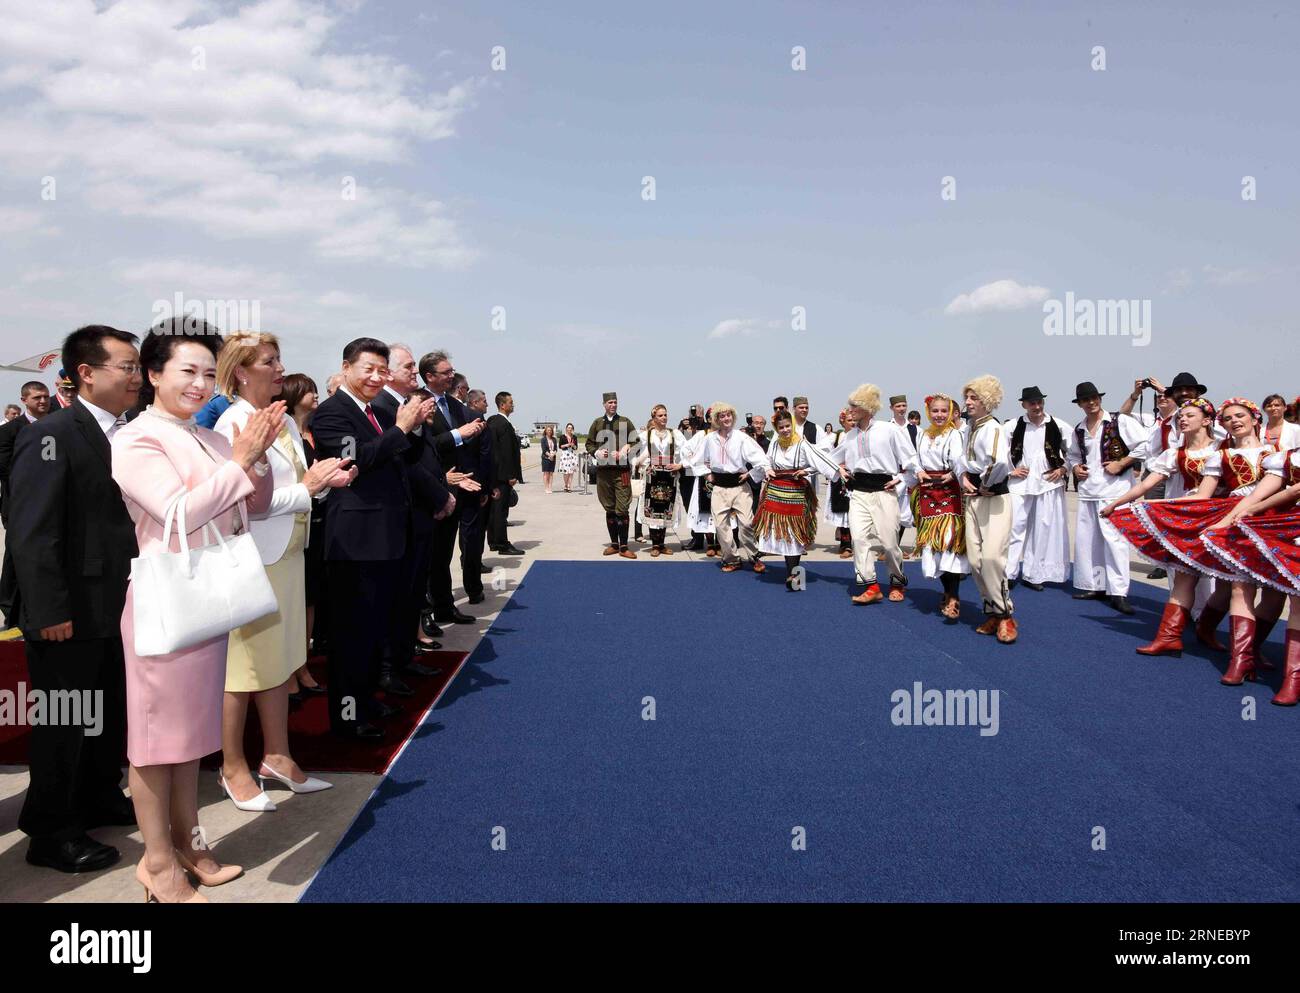 XI Jinping zu Gast in Belgrad (160617) -- BELGRAD, 17. Juni 2016 -- der chinesische Präsident Xi Jinping und seine Frau Peng Liyuan werden bei ihrer Ankunft am Flughafen Belgrad, Serbien, am 17. Juni 2016 mit dem traditionellen serbischen Volkstanz Kolo begrüßt. XI begann am Freitag einen Staatsbesuch in Serbien.)wjq SERBIEN-BELGRAD-CHINA-XI JINPING-ARRIVAL RaoxAimin PUBLICATIONxNOTxINxCHN Xi Jinping zu Gast in Belgrad 160617 Belgrad 17. Juni 2016 der chinesische Präsident Xi Jinping und seine Frau Peng Liyuan werden BEI ihrer Ankunft in der Airpo mit einem traditionellen serbischen Volkstanz Kolo begrüßt Stockfoto